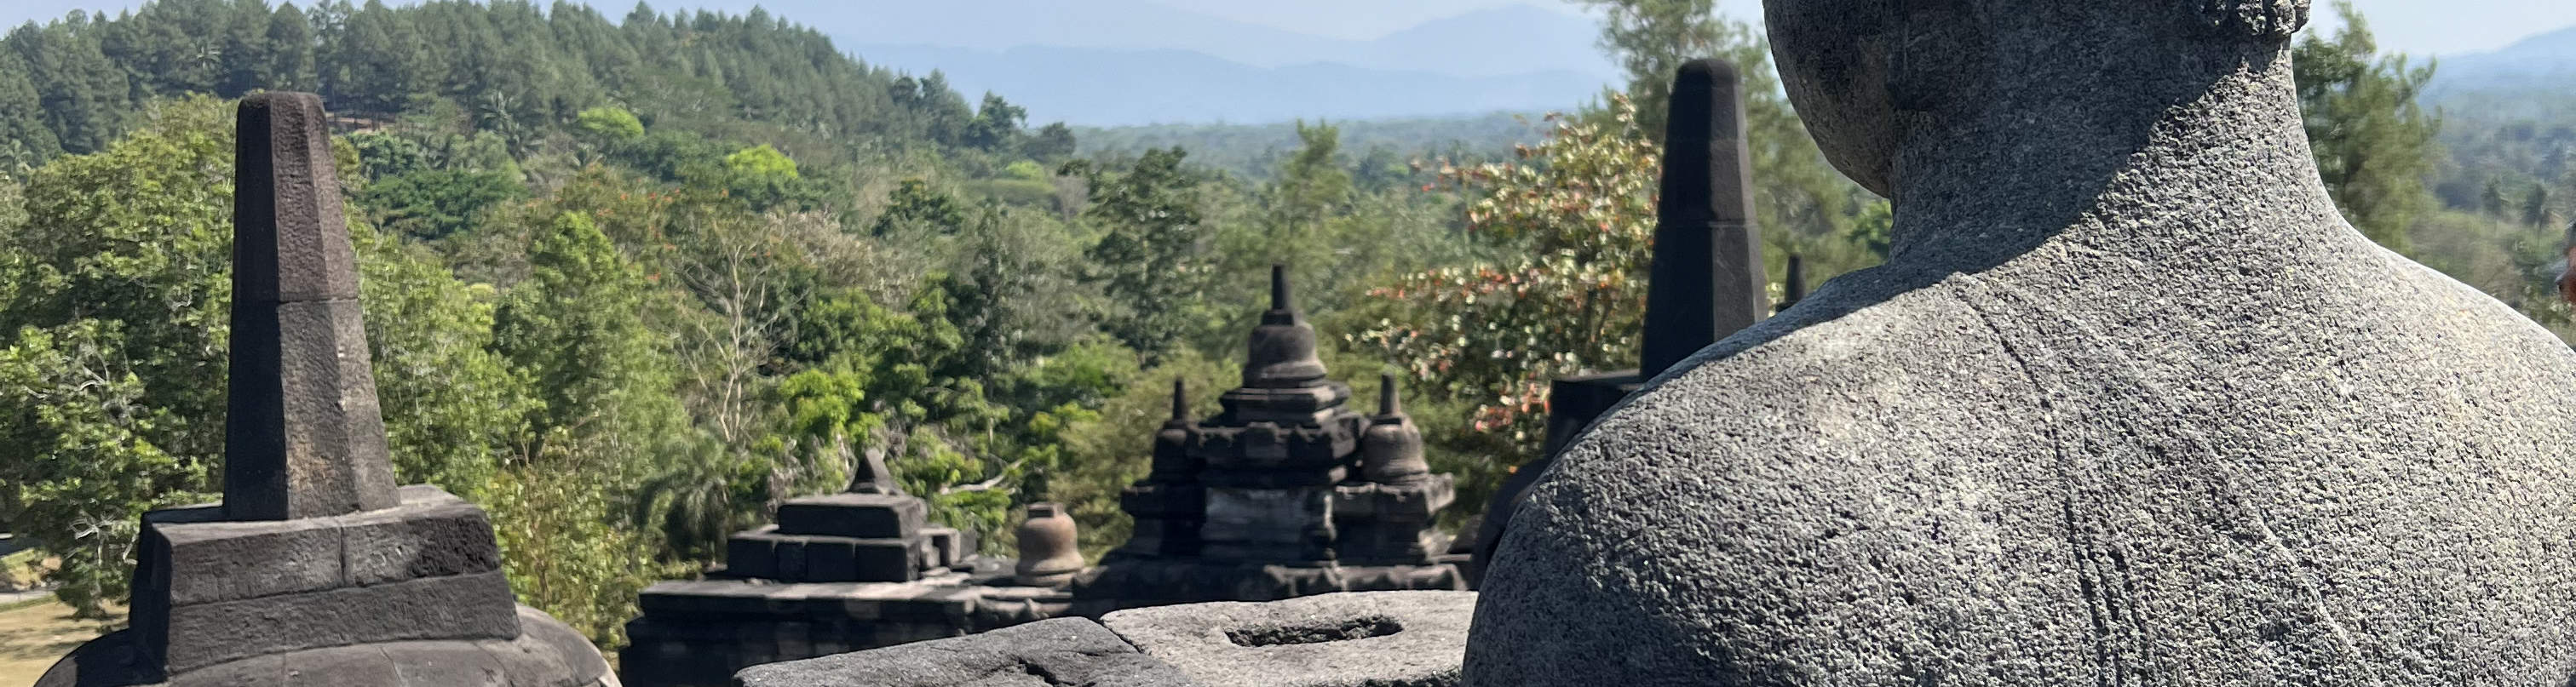 Klook Trip Borobudur United - Sunrise Temple Kingdom Prambanan and